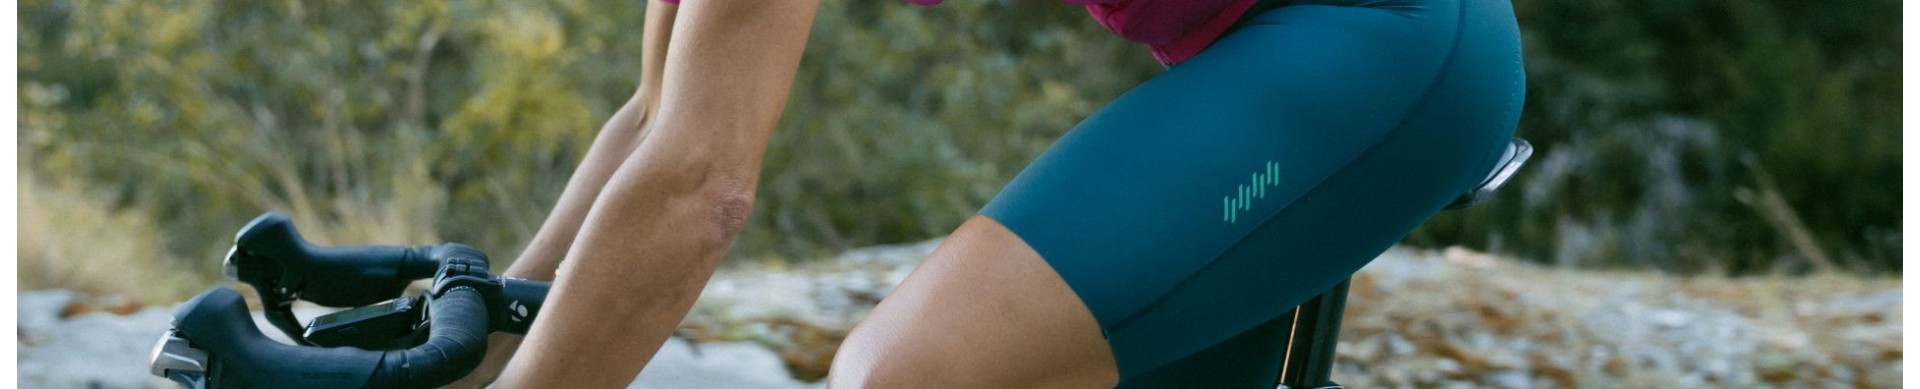 Culotes ciclismo de verano para mujer